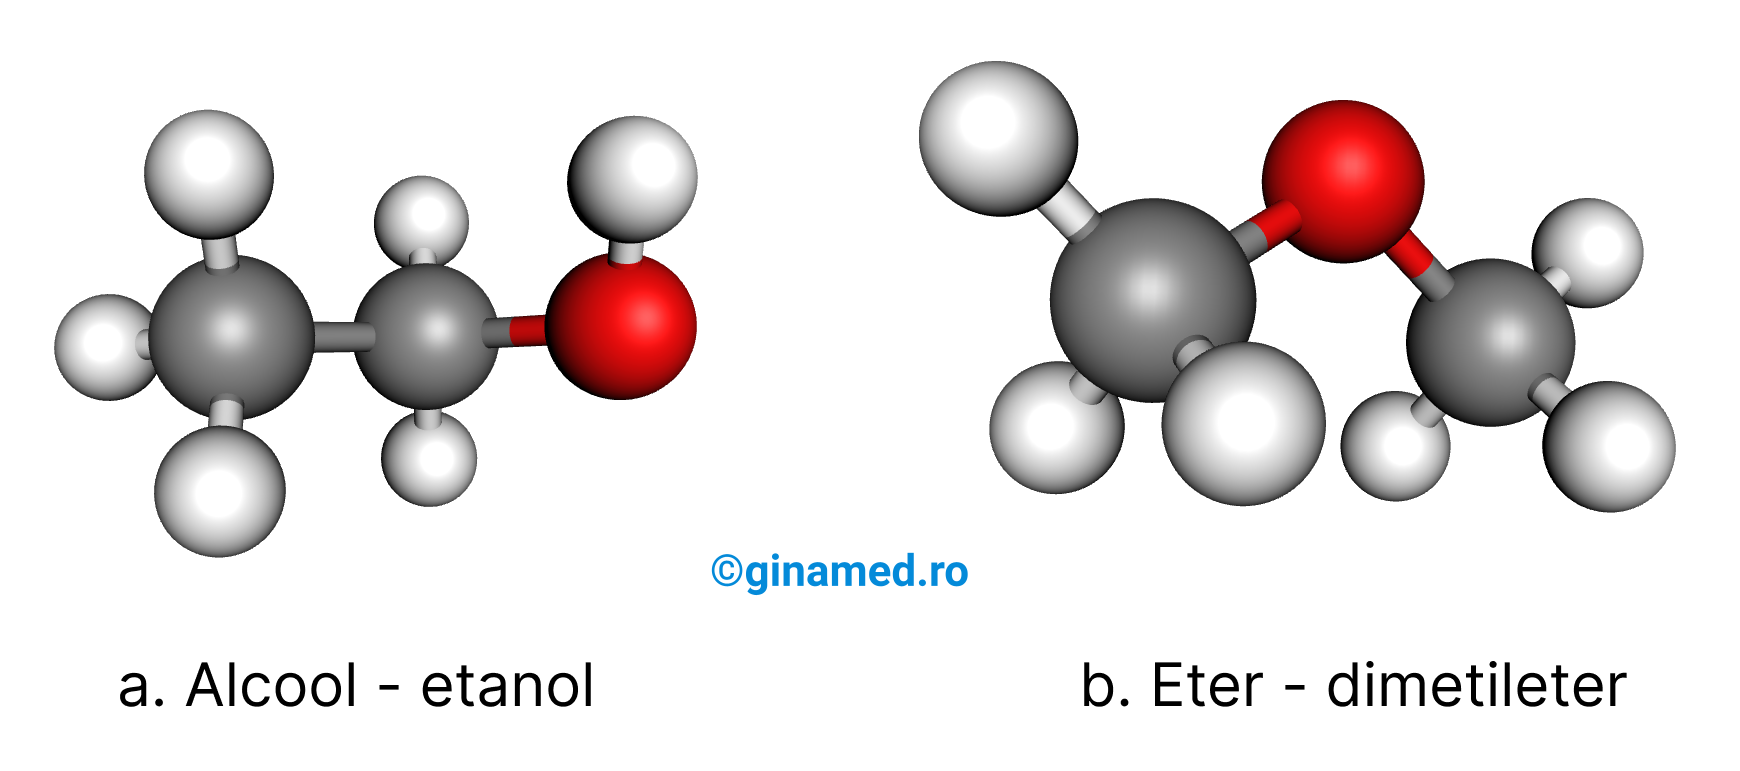 Izomerii de funcțiune ai compusului cu formula moleculară&nbsp;[HTML]C&lt;sub&gt;2&lt;/sub&gt;H&lt;sub&gt;6&lt;/sub&gt;O[/HTML] (bila roșie reprezintă atomul de oxigen, bila albă atomul de hidrogen și bila gri atomul de carbon).